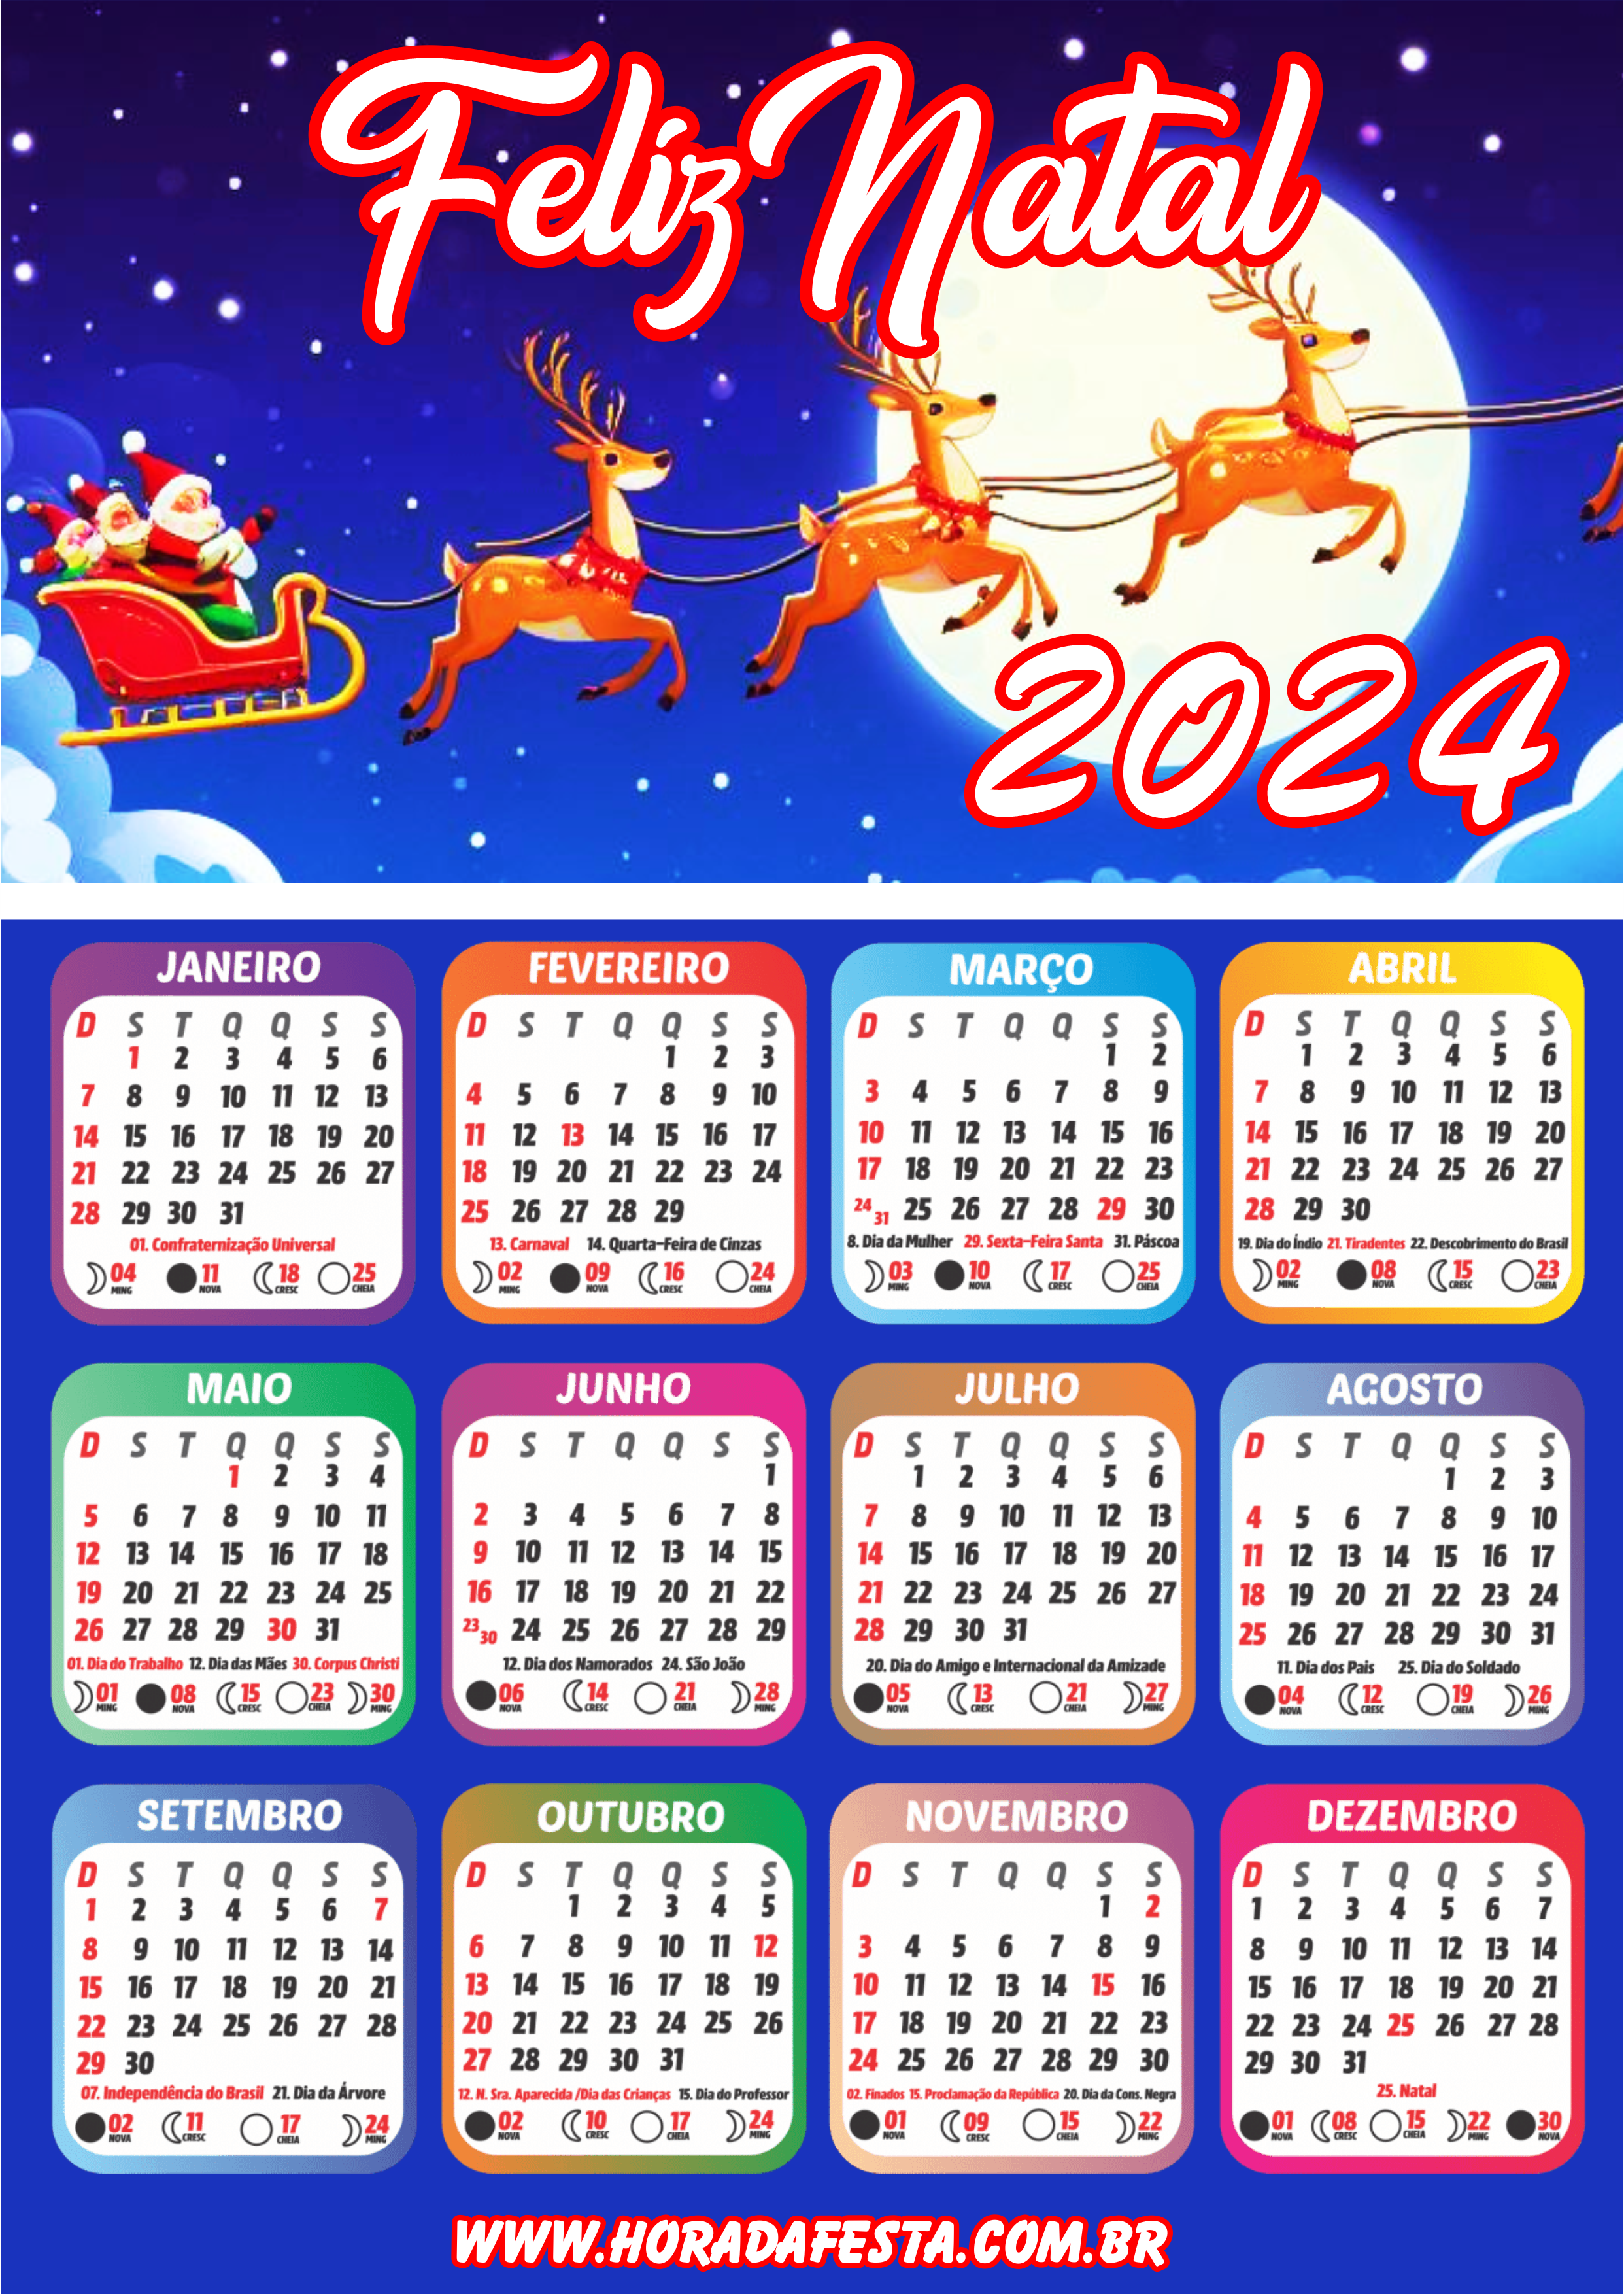 Feliz natal noite feliz calendário 2024 artigos de papelaria renda extra com personalizados artes gráficas lua png